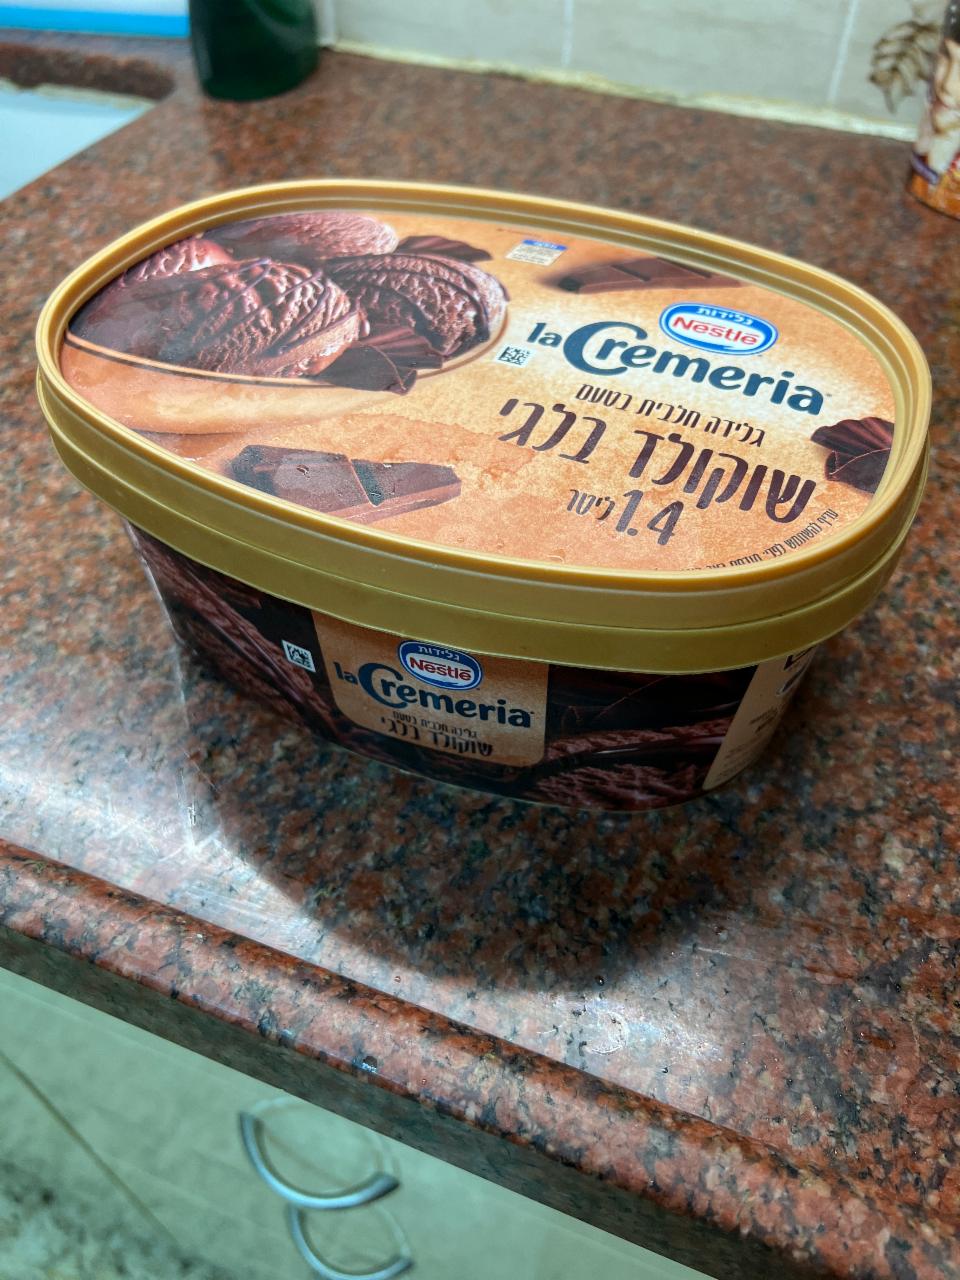 Фото - Молочное мороженное la Cremeria вкуса Бельгийского шоколада Nestlé